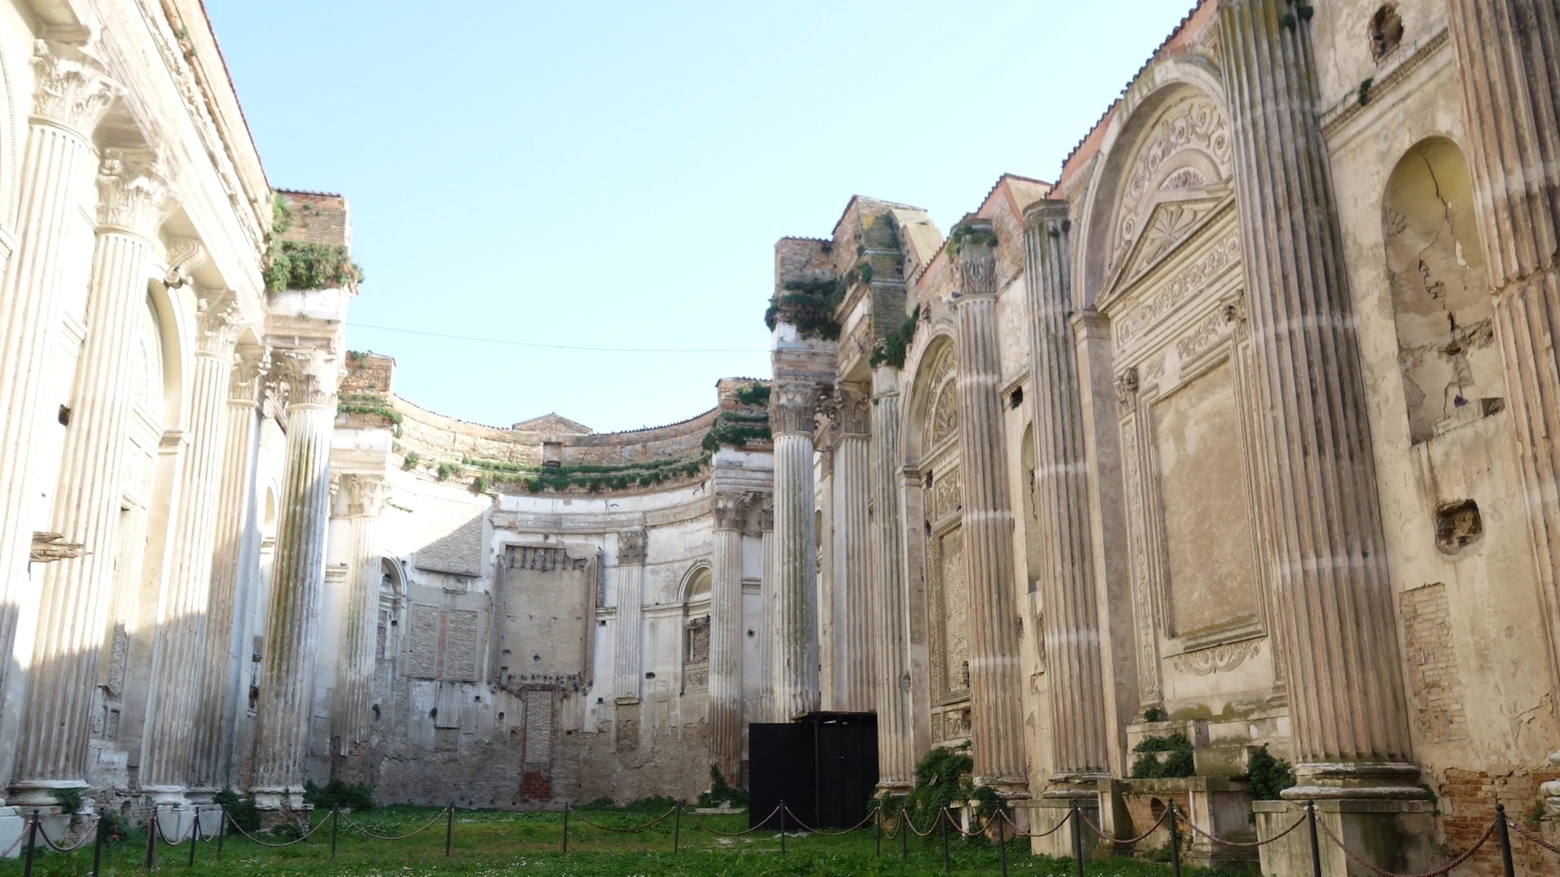 Convento e chiesa di San Francesco, Fano (Pesaro-Urbino)